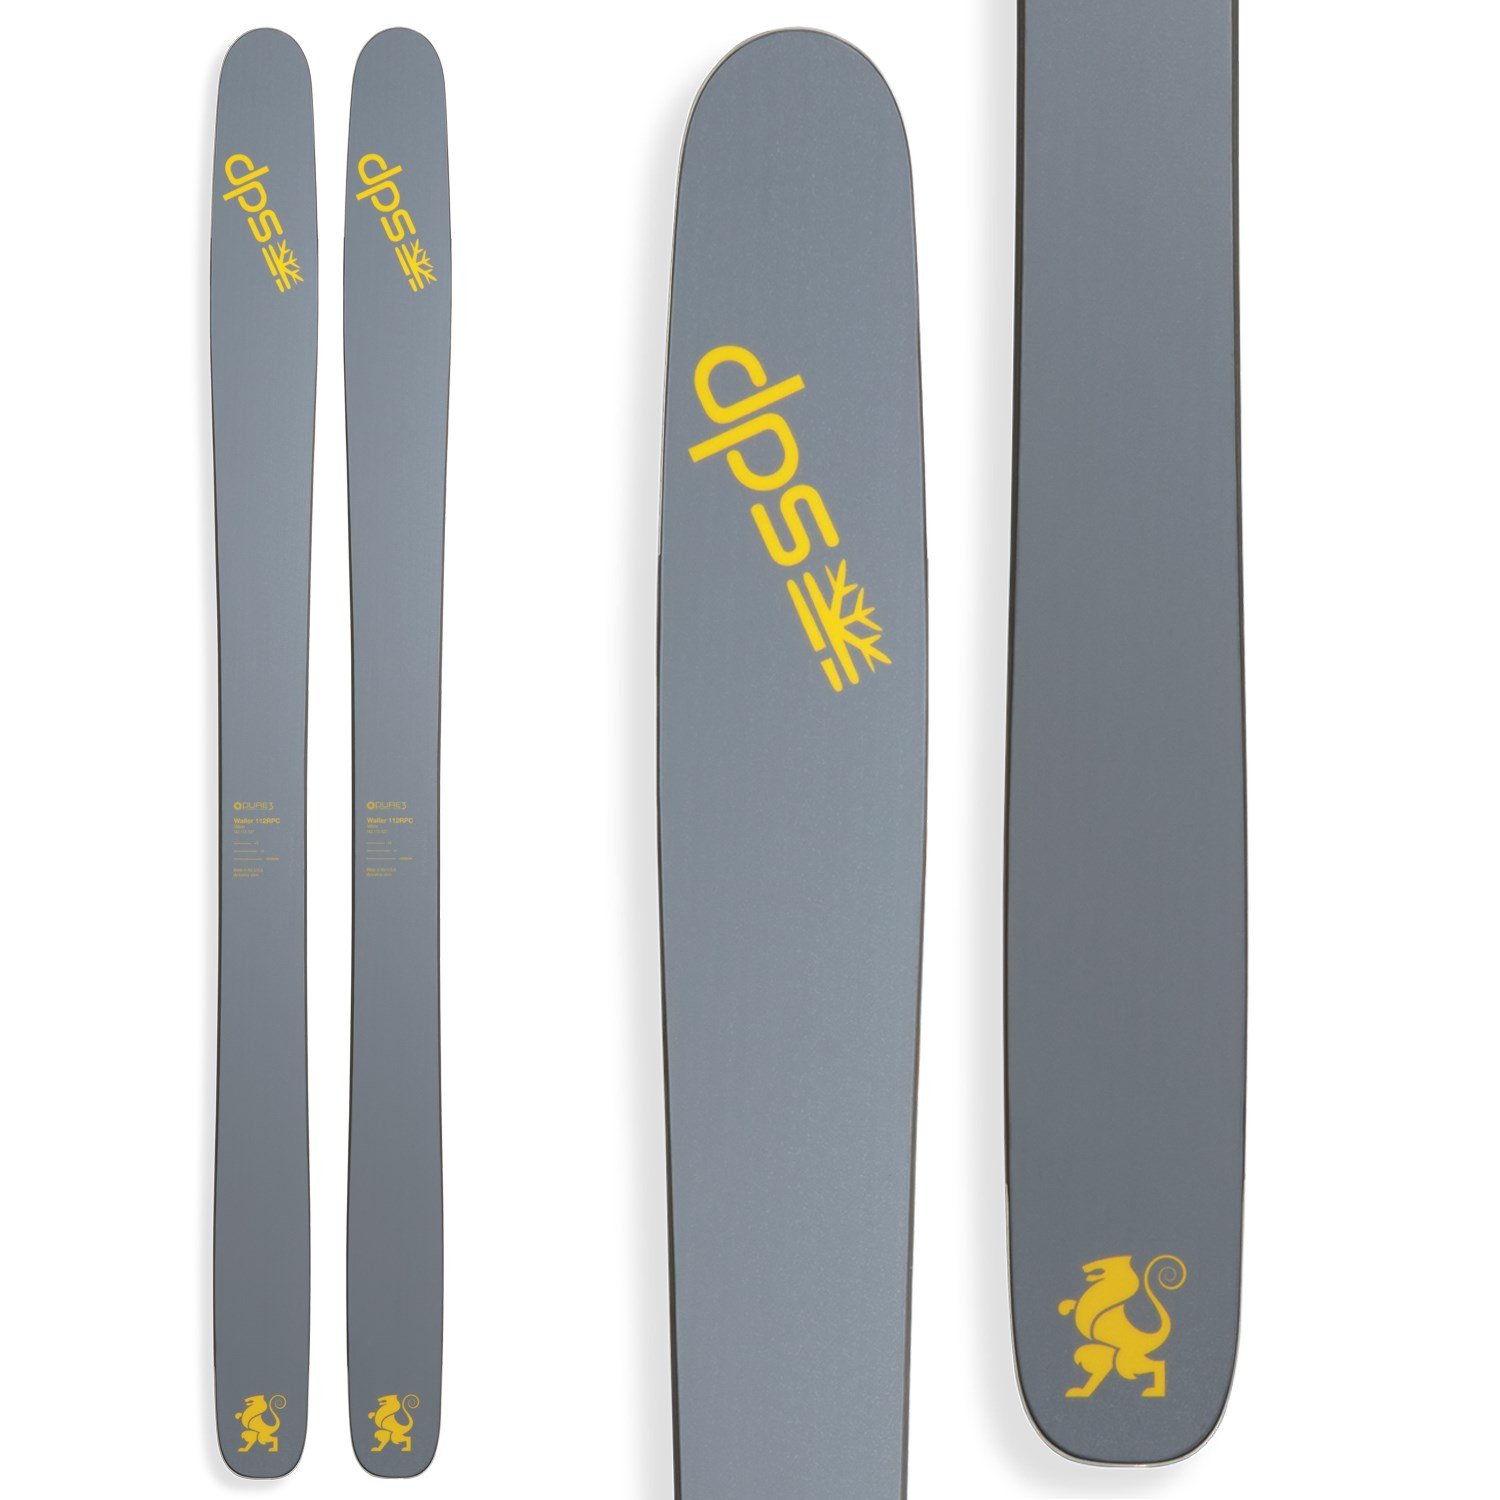 Dps Skis Factory Sale, 55% OFF | www.propellermadrid.com